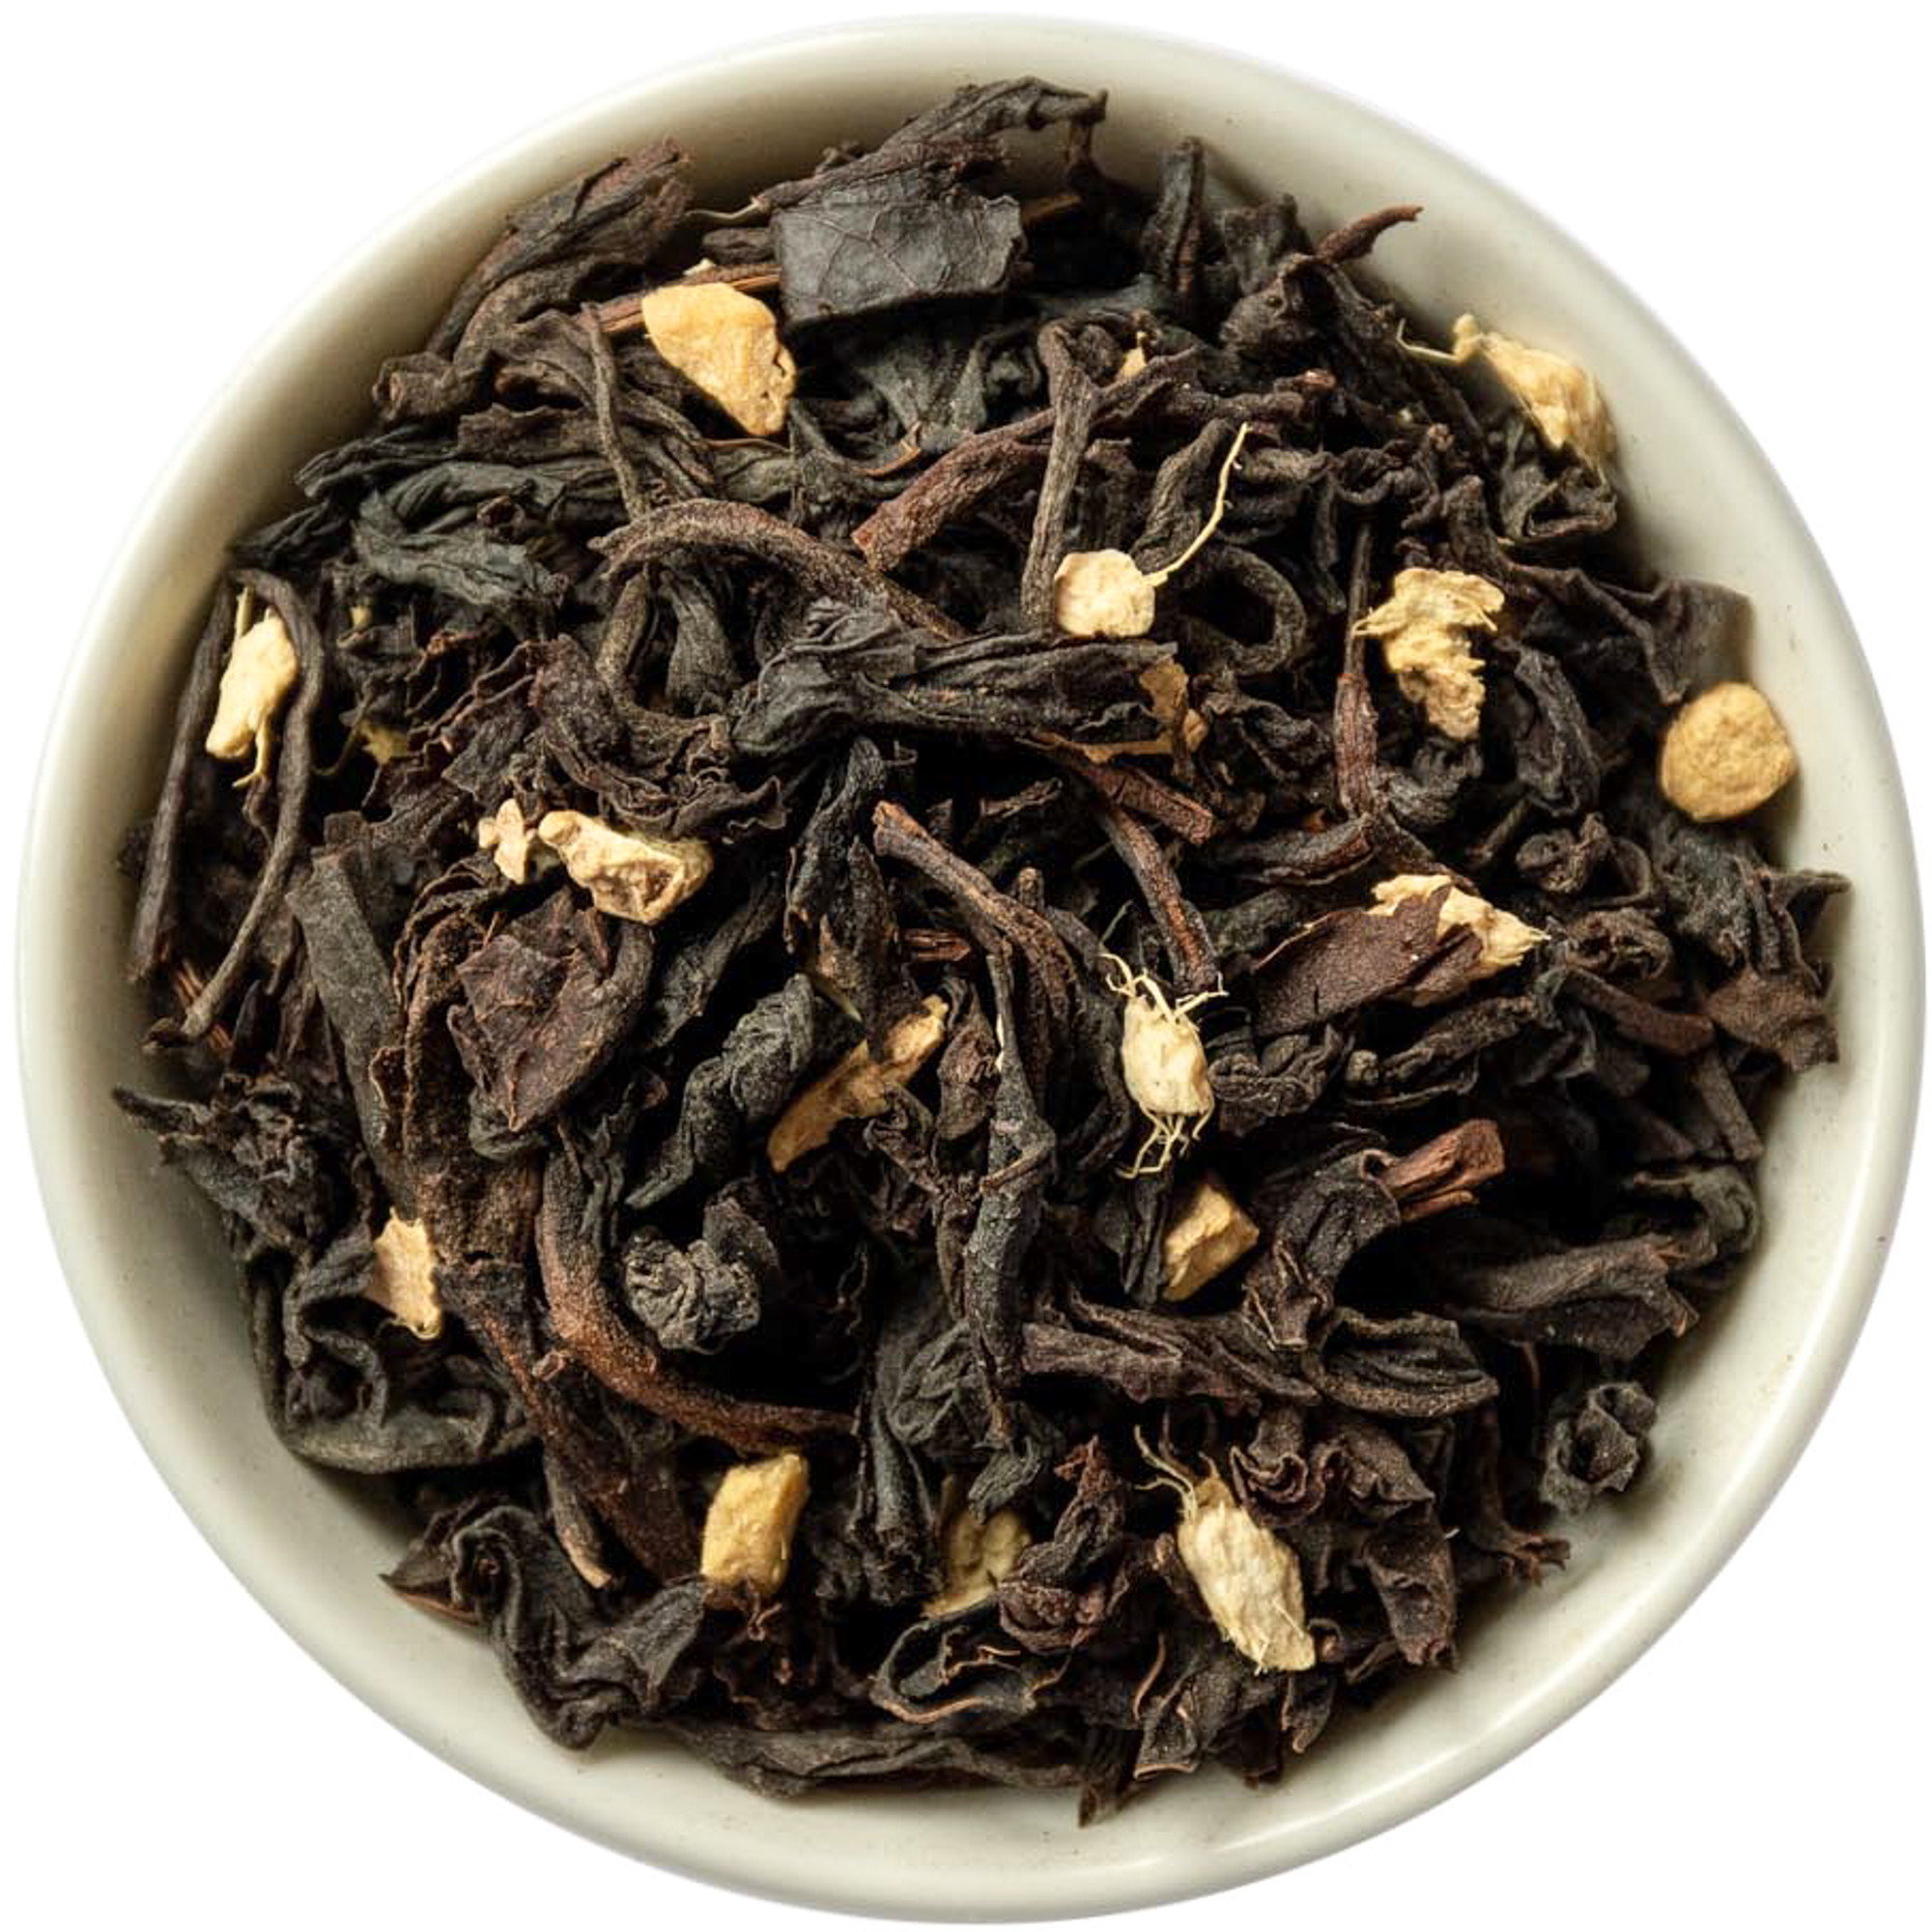 ХИТ! Восточный имбирь чёрный чай (Ассам)  с добавками  (200 гр)